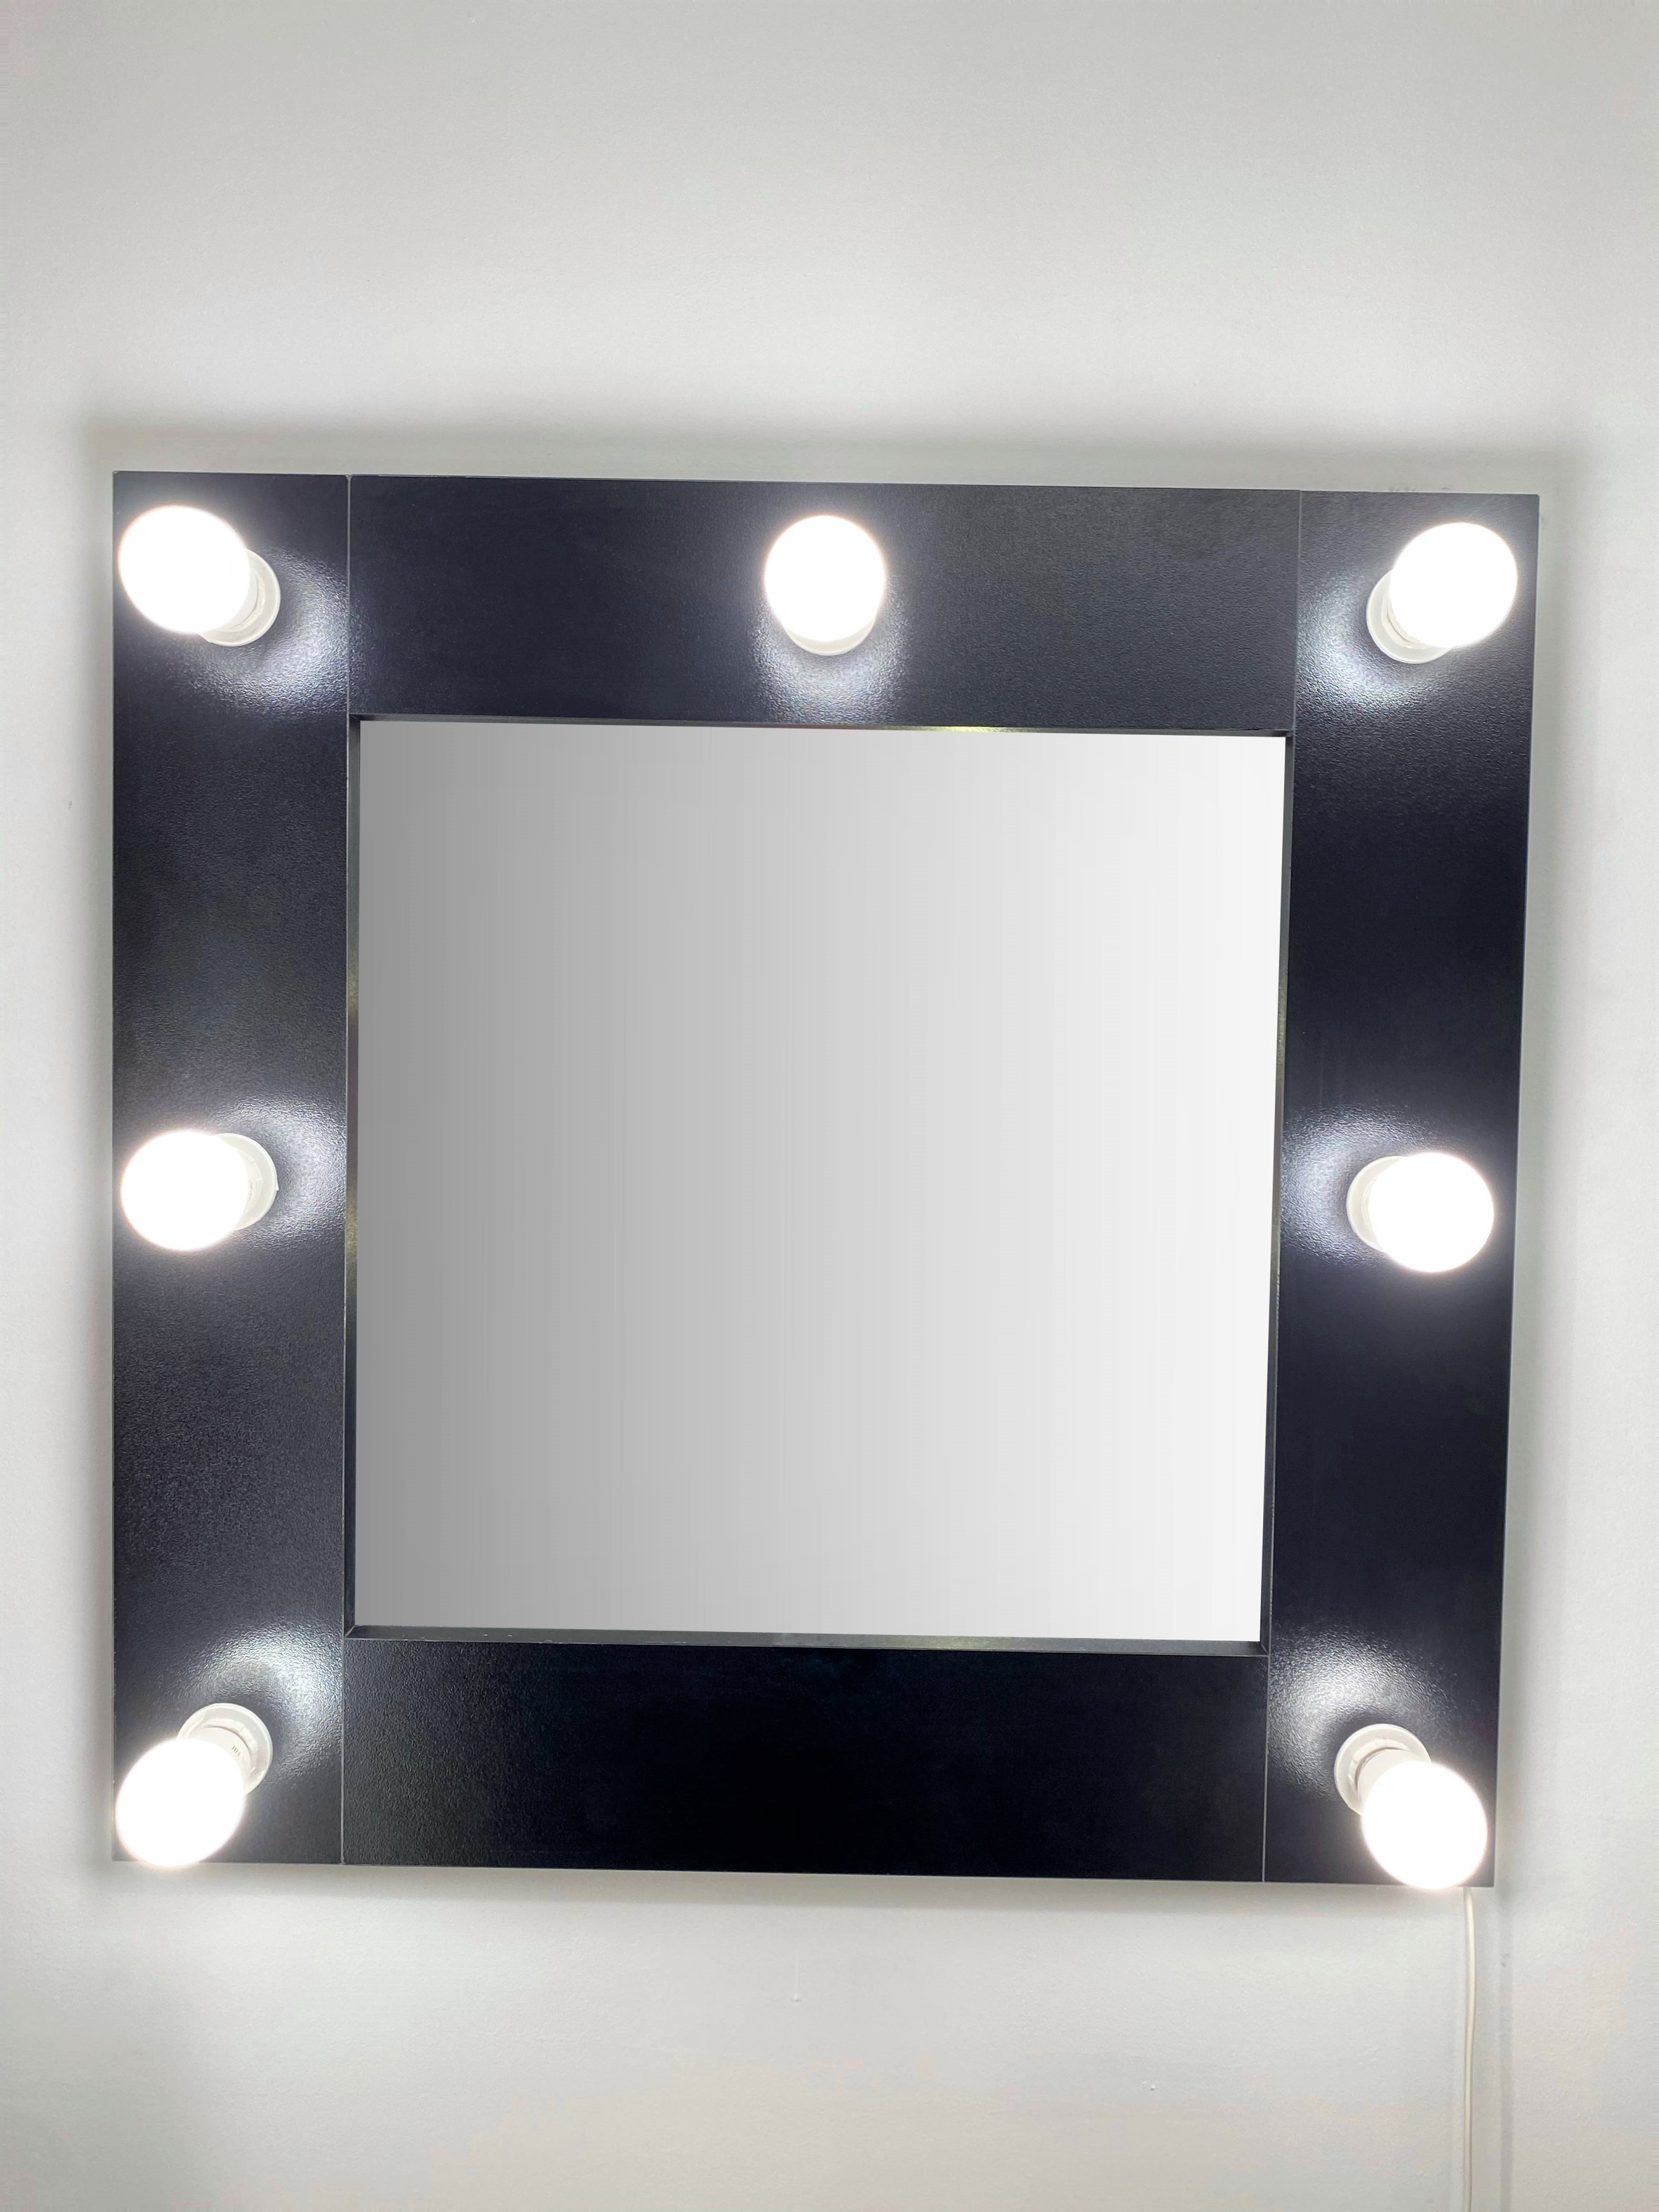 91053070 Гримерное зеркало с лампочками 60x60 см черный STLM-0458980 BEAUTYUP